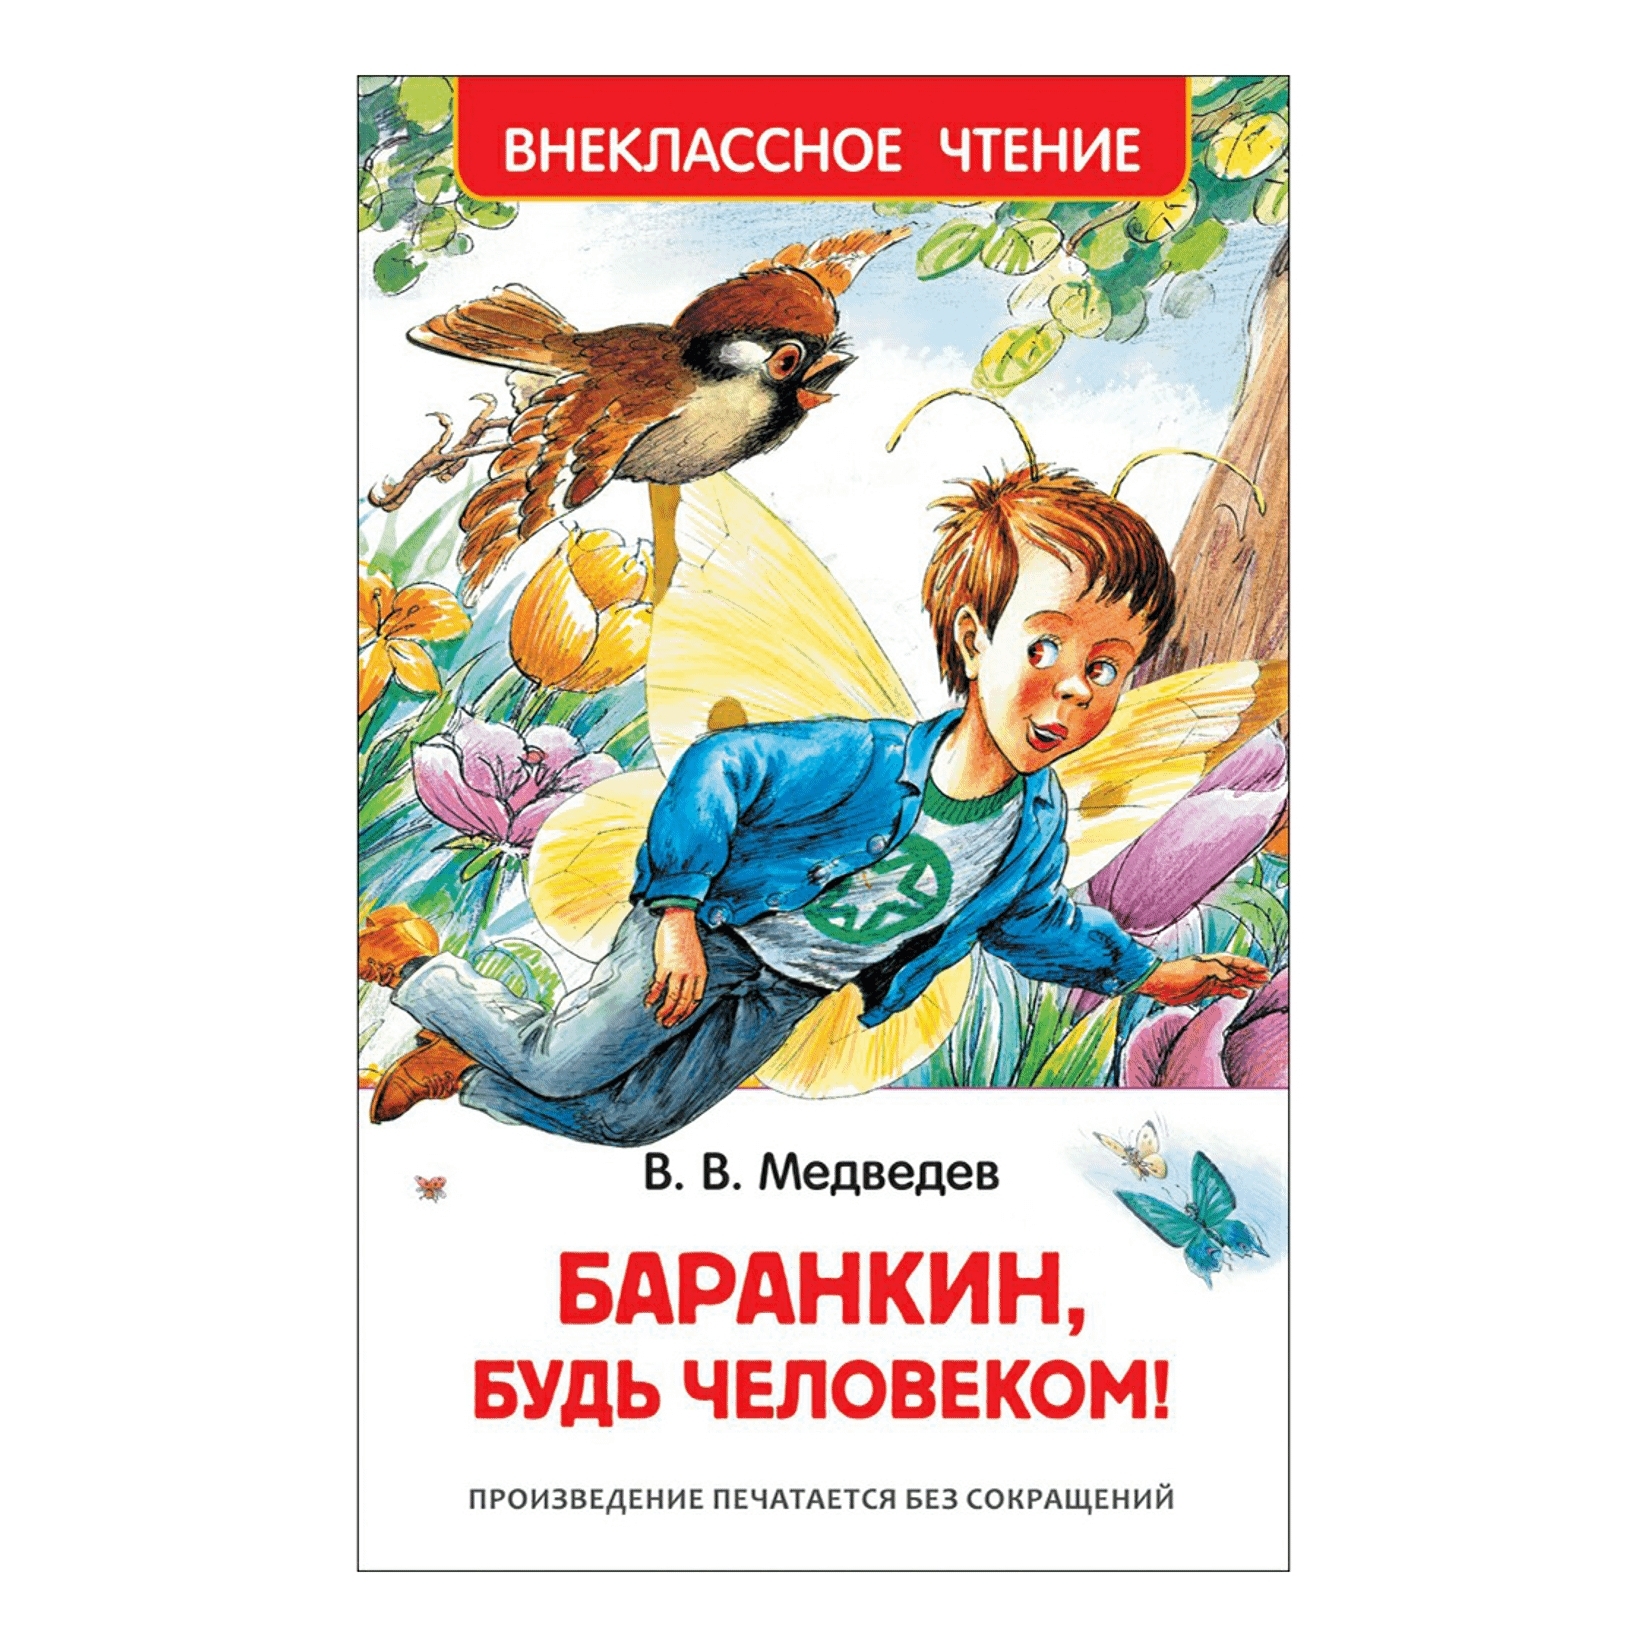 Читать будь человеком полностью. Книга Медведева Баранкин будь человеком. Медведев Баранкин будь человеком обложка.